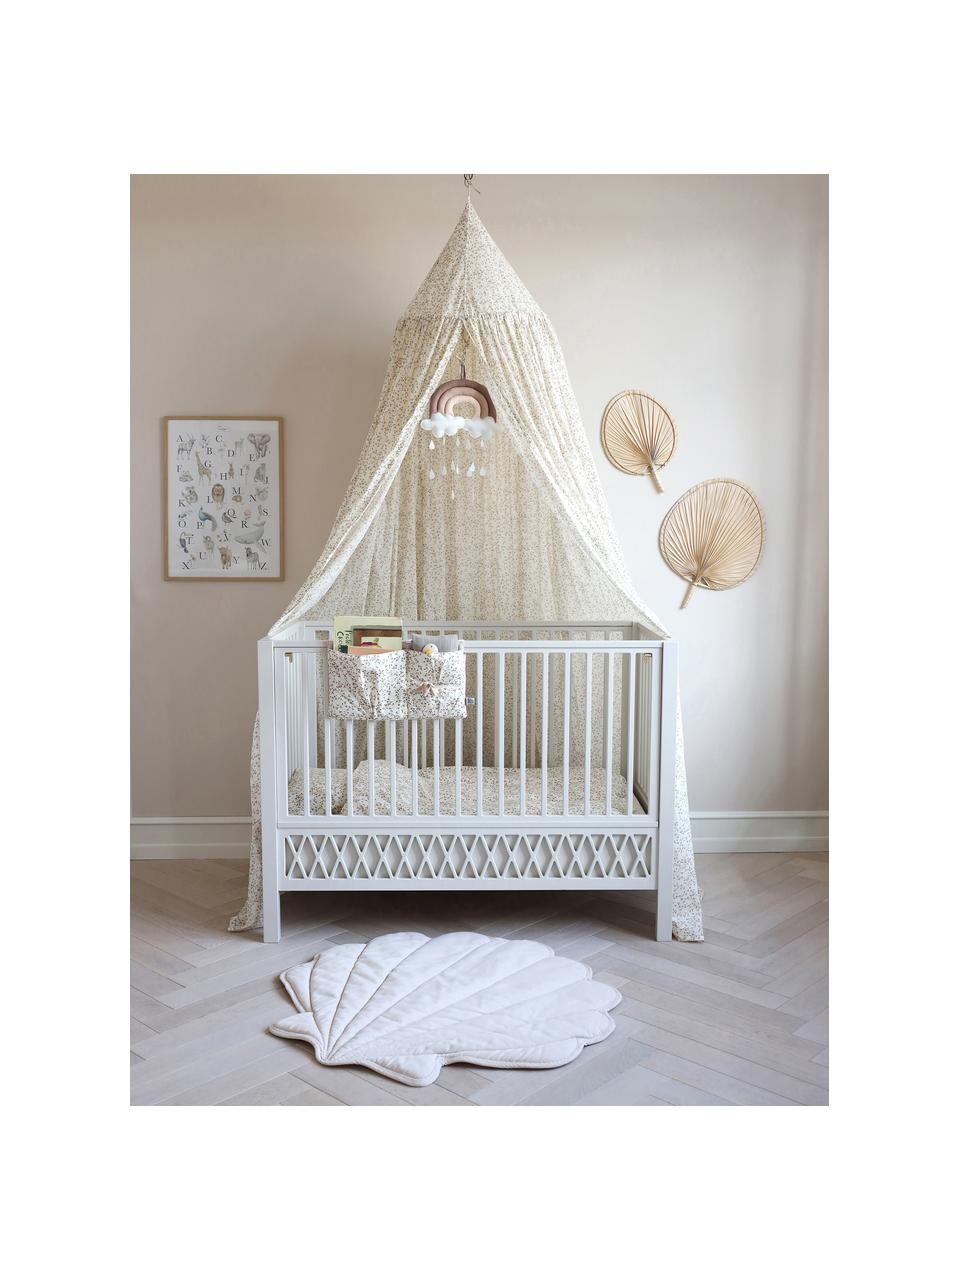 Höhenverstellbares Baby-Bett Harlequin, 60 x 120 cm, Kiefernholz, Mitteldichte Holzfaserplatte (MDF), lackiert mit VOC-freier Farbe und FSC-zertifiziert, Kiefernholz, weiß lackiert, B 60 x L 120 cm